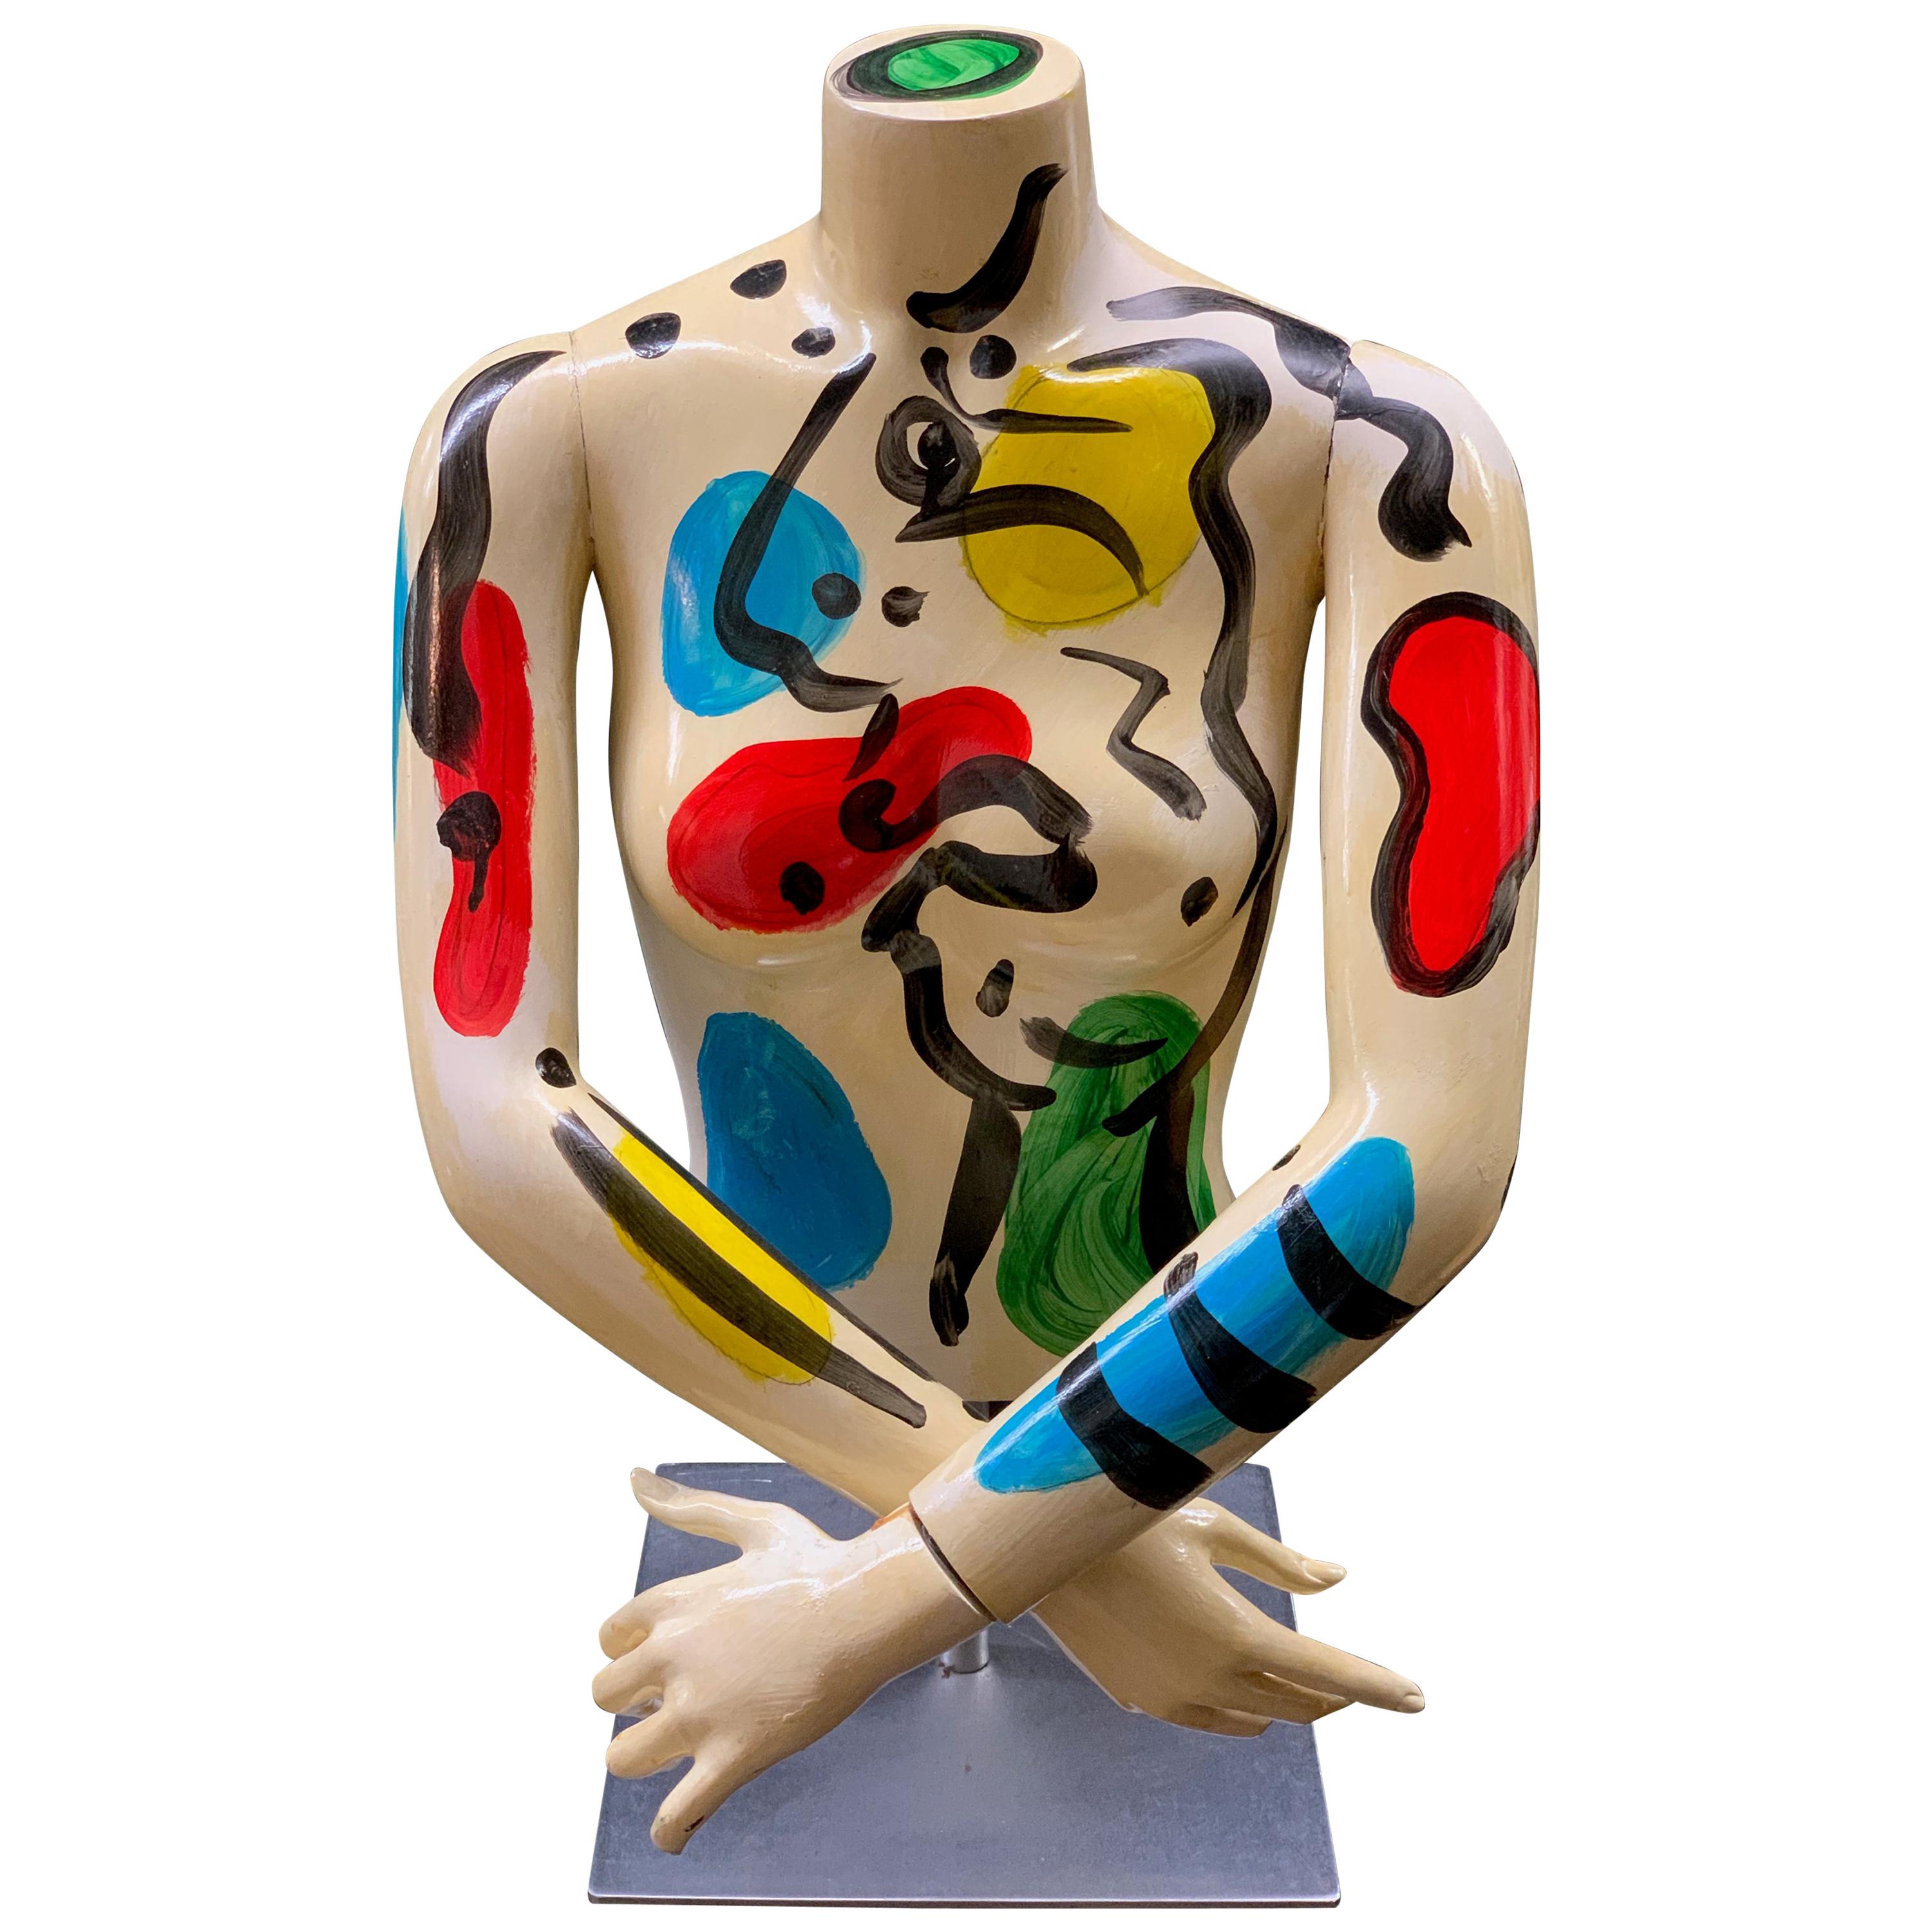 Torse à mannequin peint de Peter Keil, expressionniste abstrait